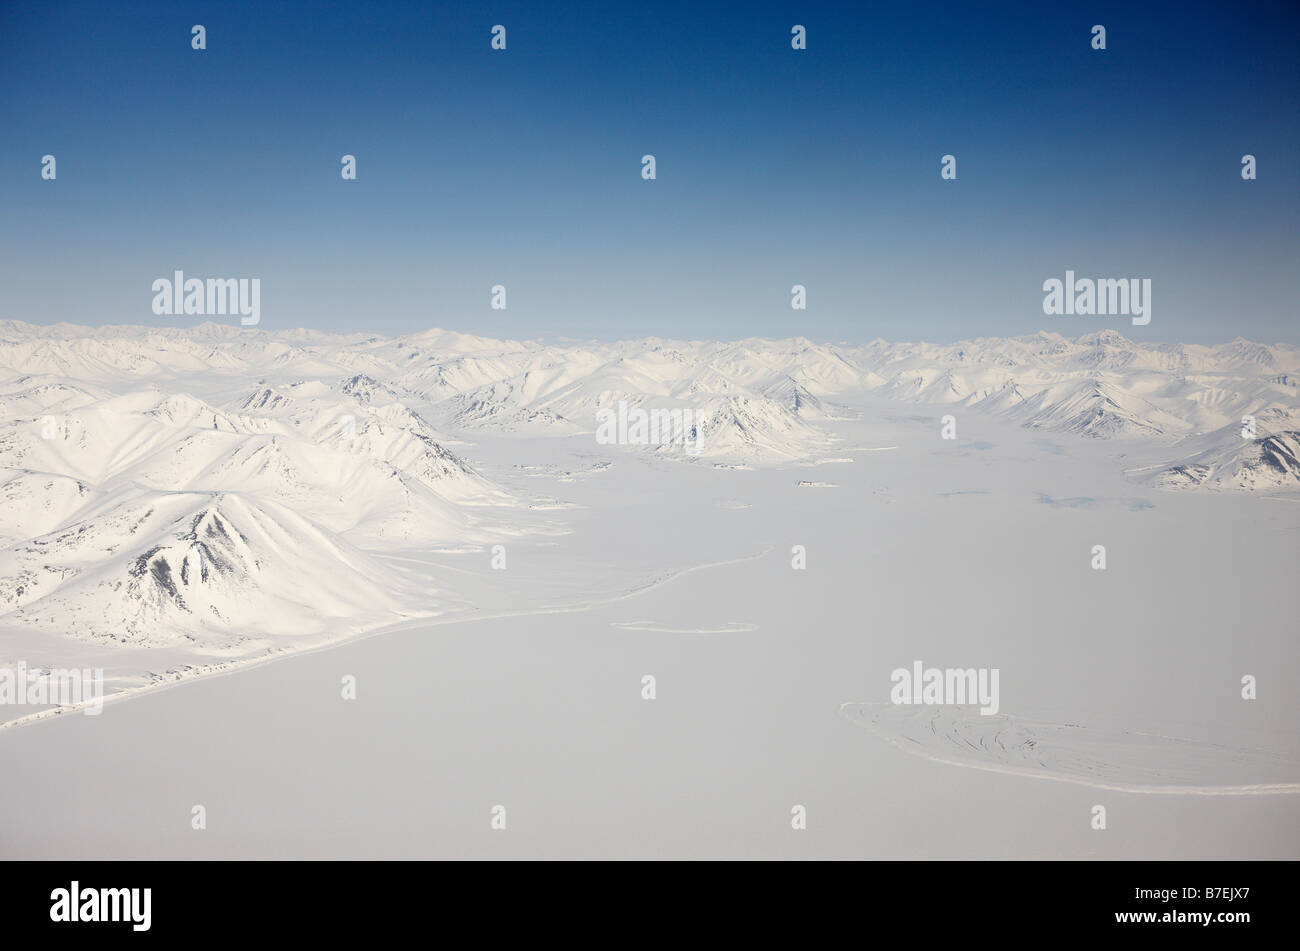 Luftaufnahmen von Schnee bedeckten Berge, zwischen Egvekinot und Anadyr Tschukotka Sibirien, Russland Stockfoto